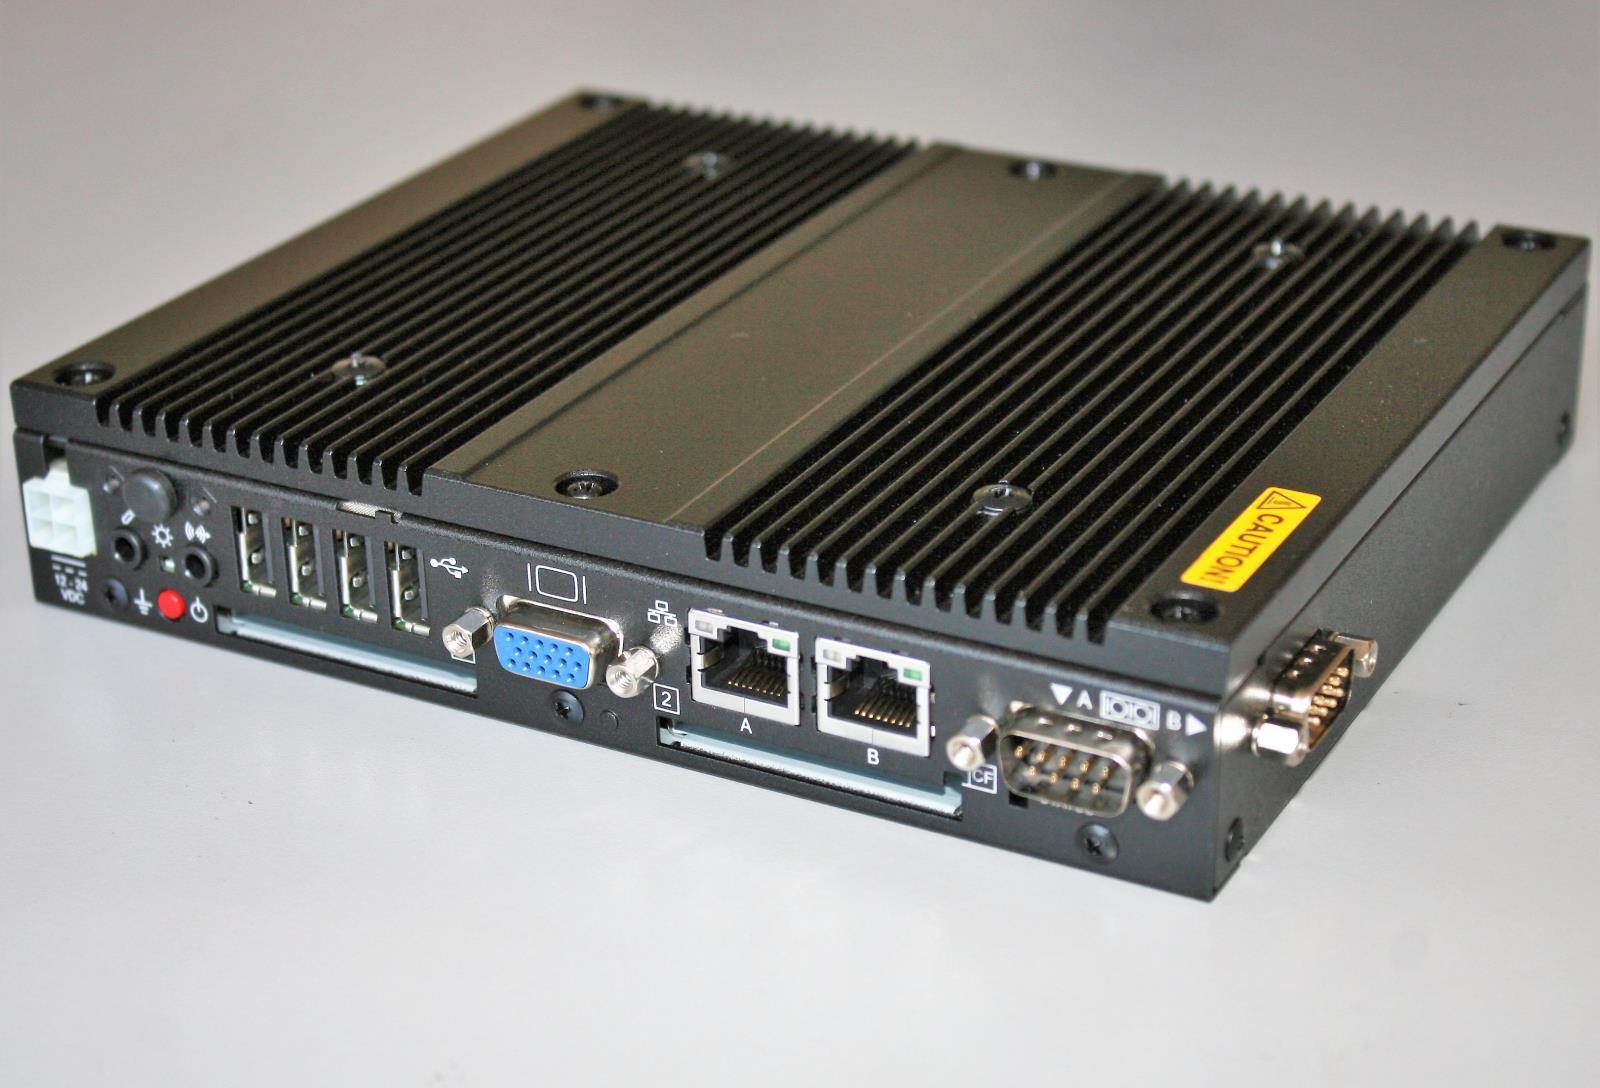 CONTEC DTx Industrial Thin Client BX-956-DC6000 1.66GHz 2GB RAM Fanless Box PC 